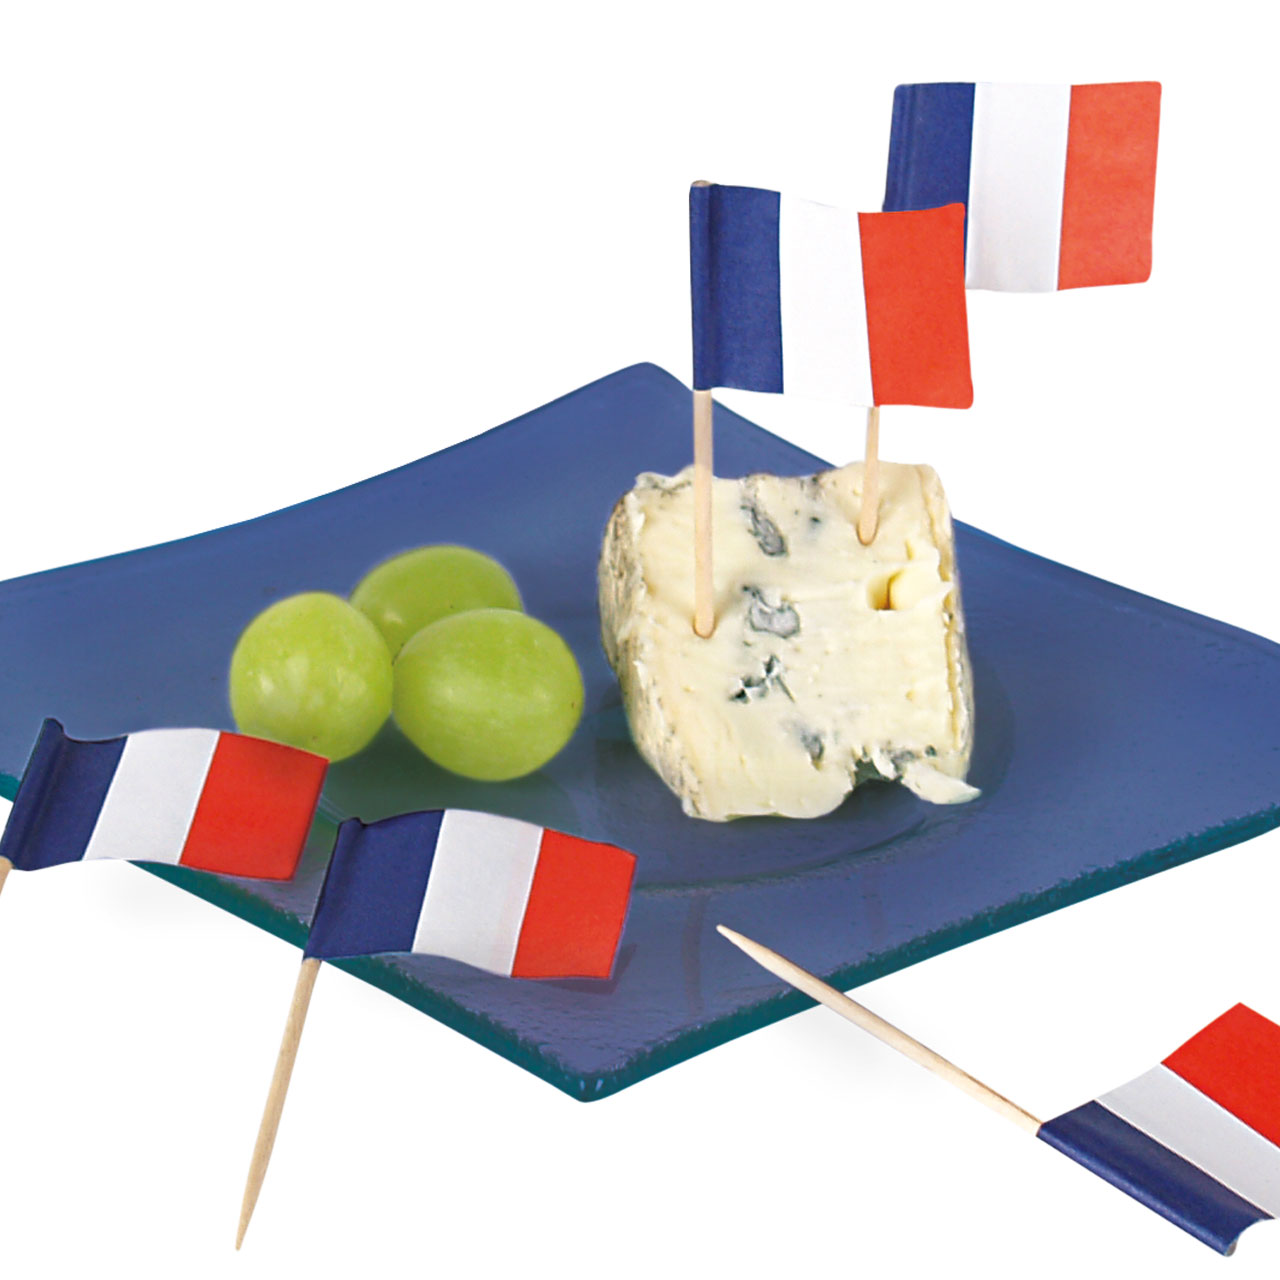 Frankreich Flagge Deko & Partygeschirr in blau-weiß-rot